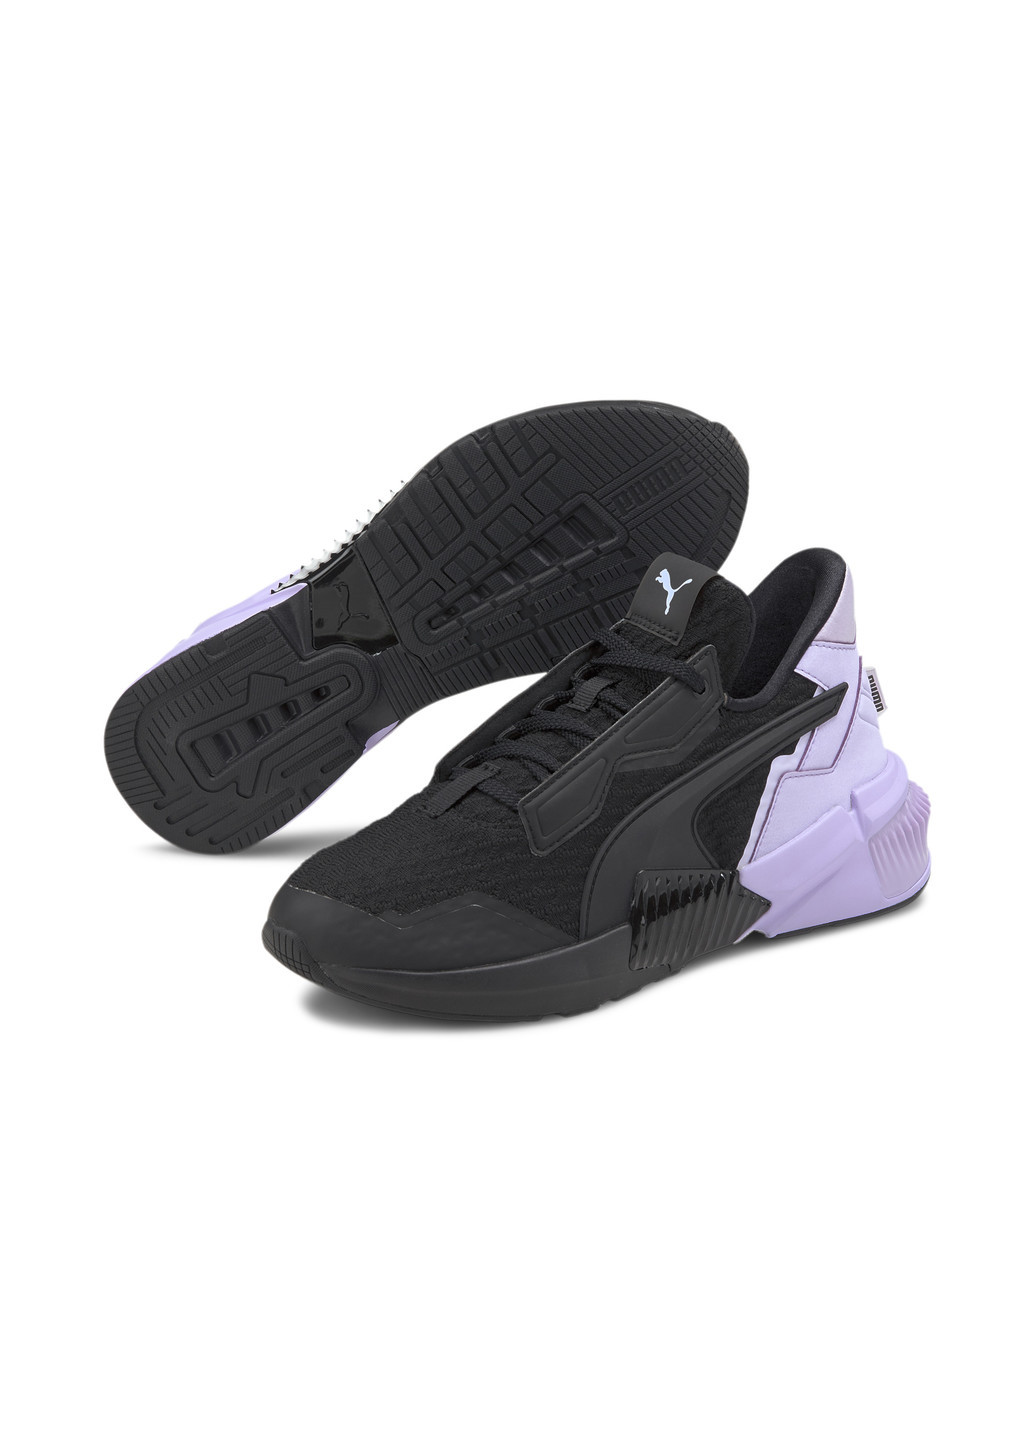 Черные всесезонные кроссовки provoke xt block women's training shoes Puma